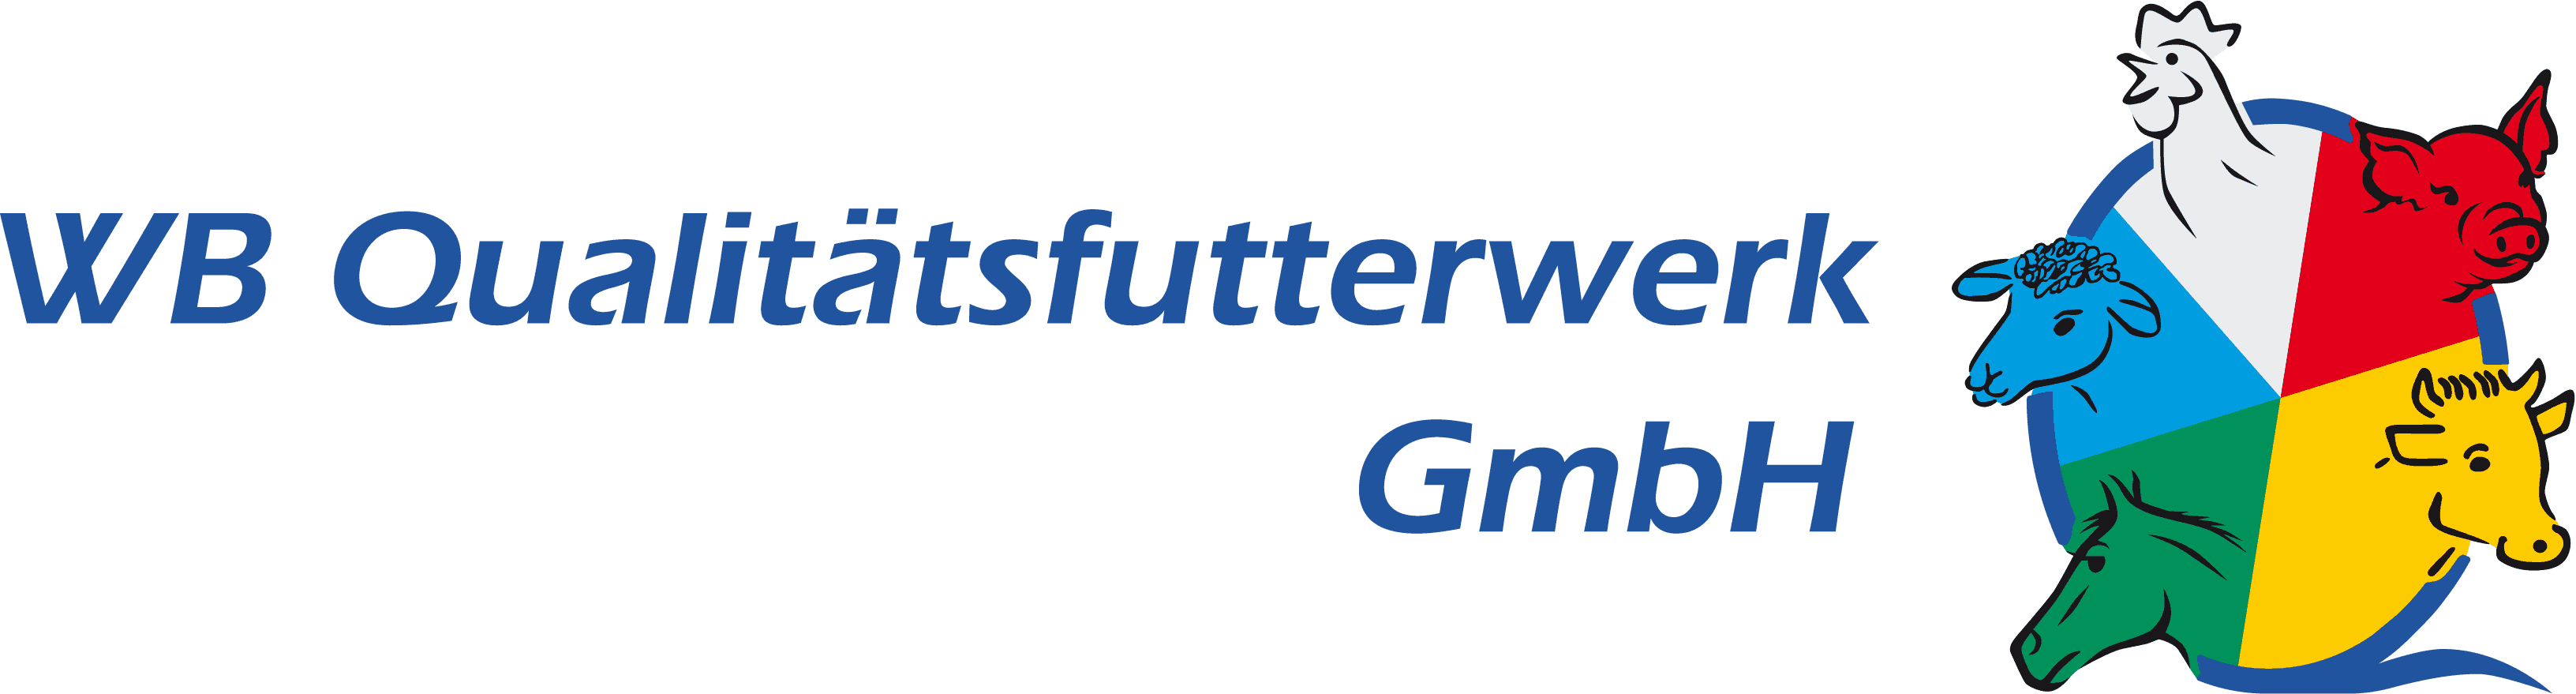 WB Qualitätsfutterwerk GmbH